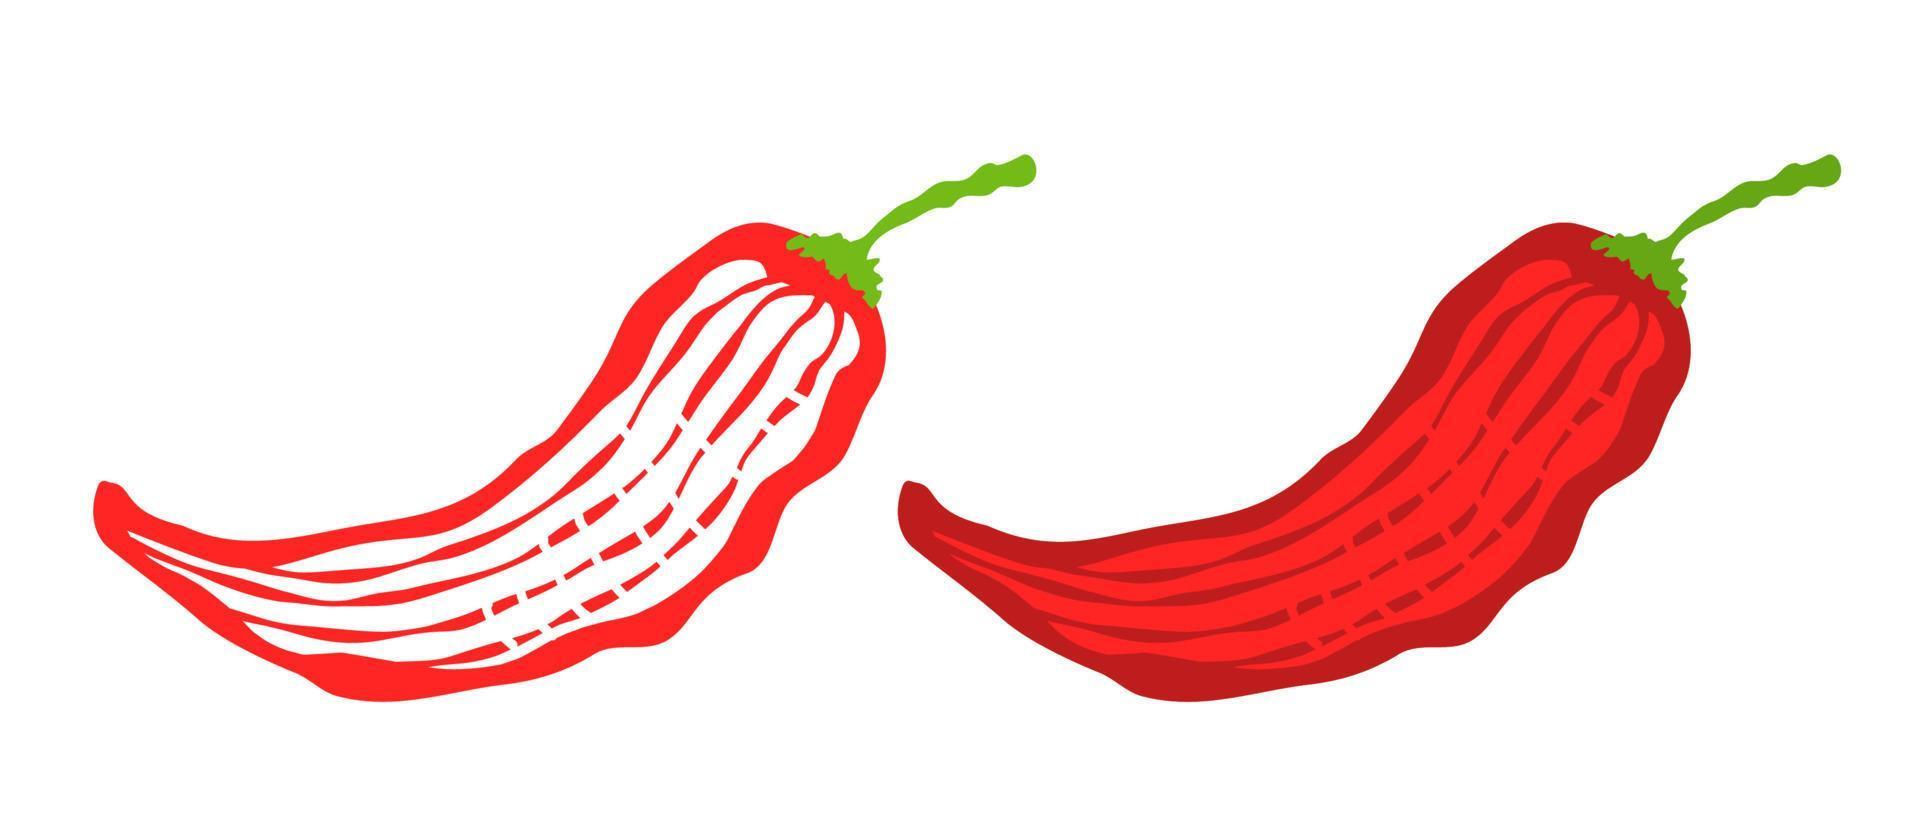 ilustração em vetor de pimenta. ícone de vetor de pimenta em estilo vintage.